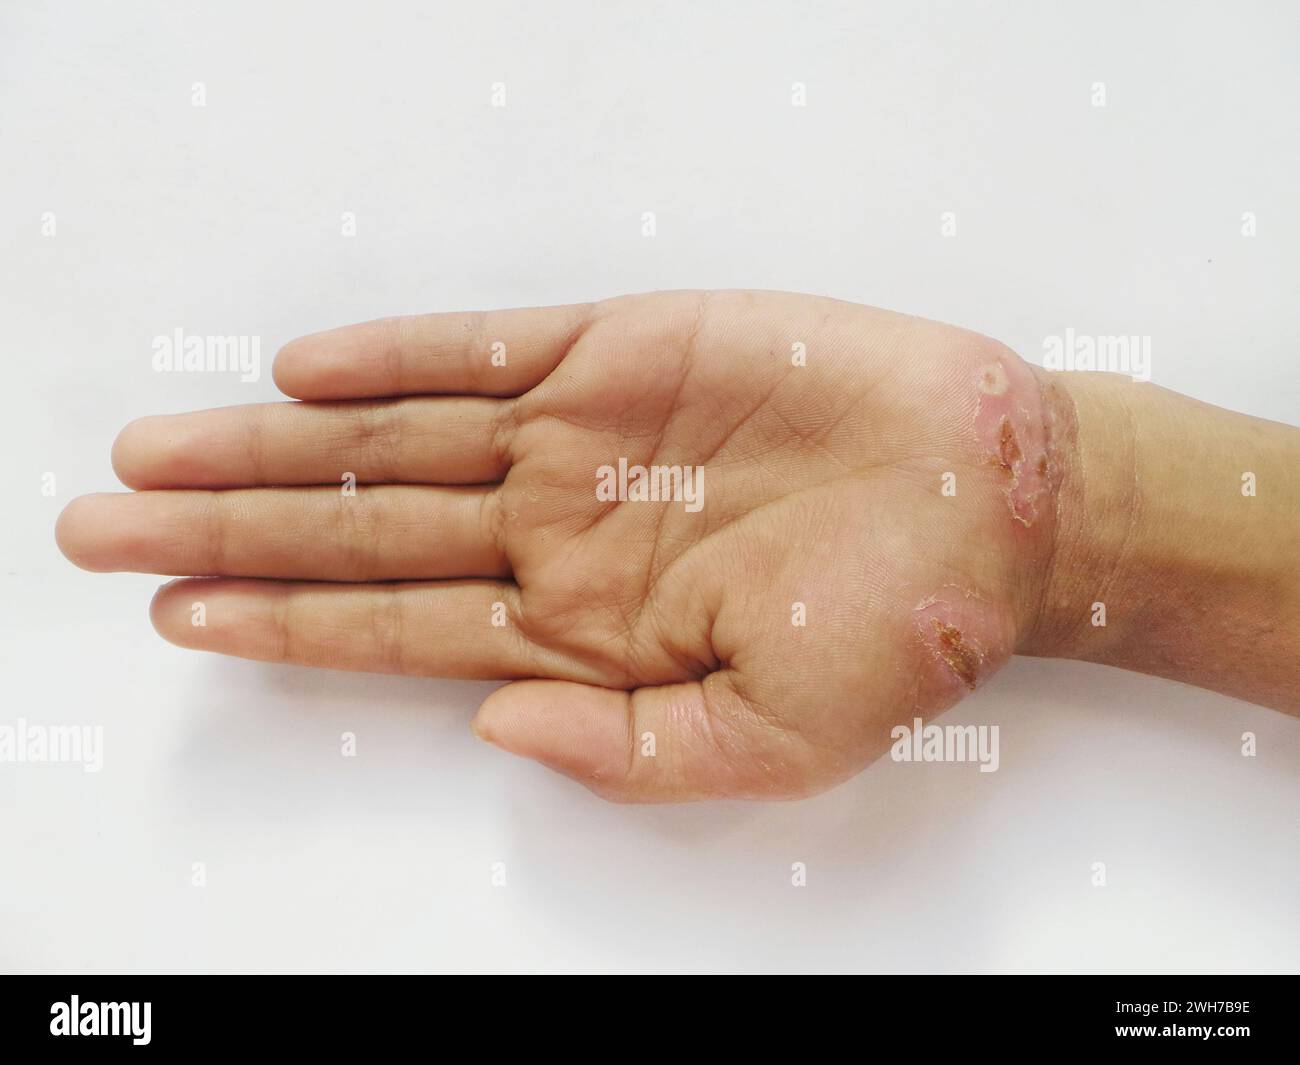 La peau sur les mains pele en raison des croûtes crevasses, les paumes démangent des allergies Banque D'Images